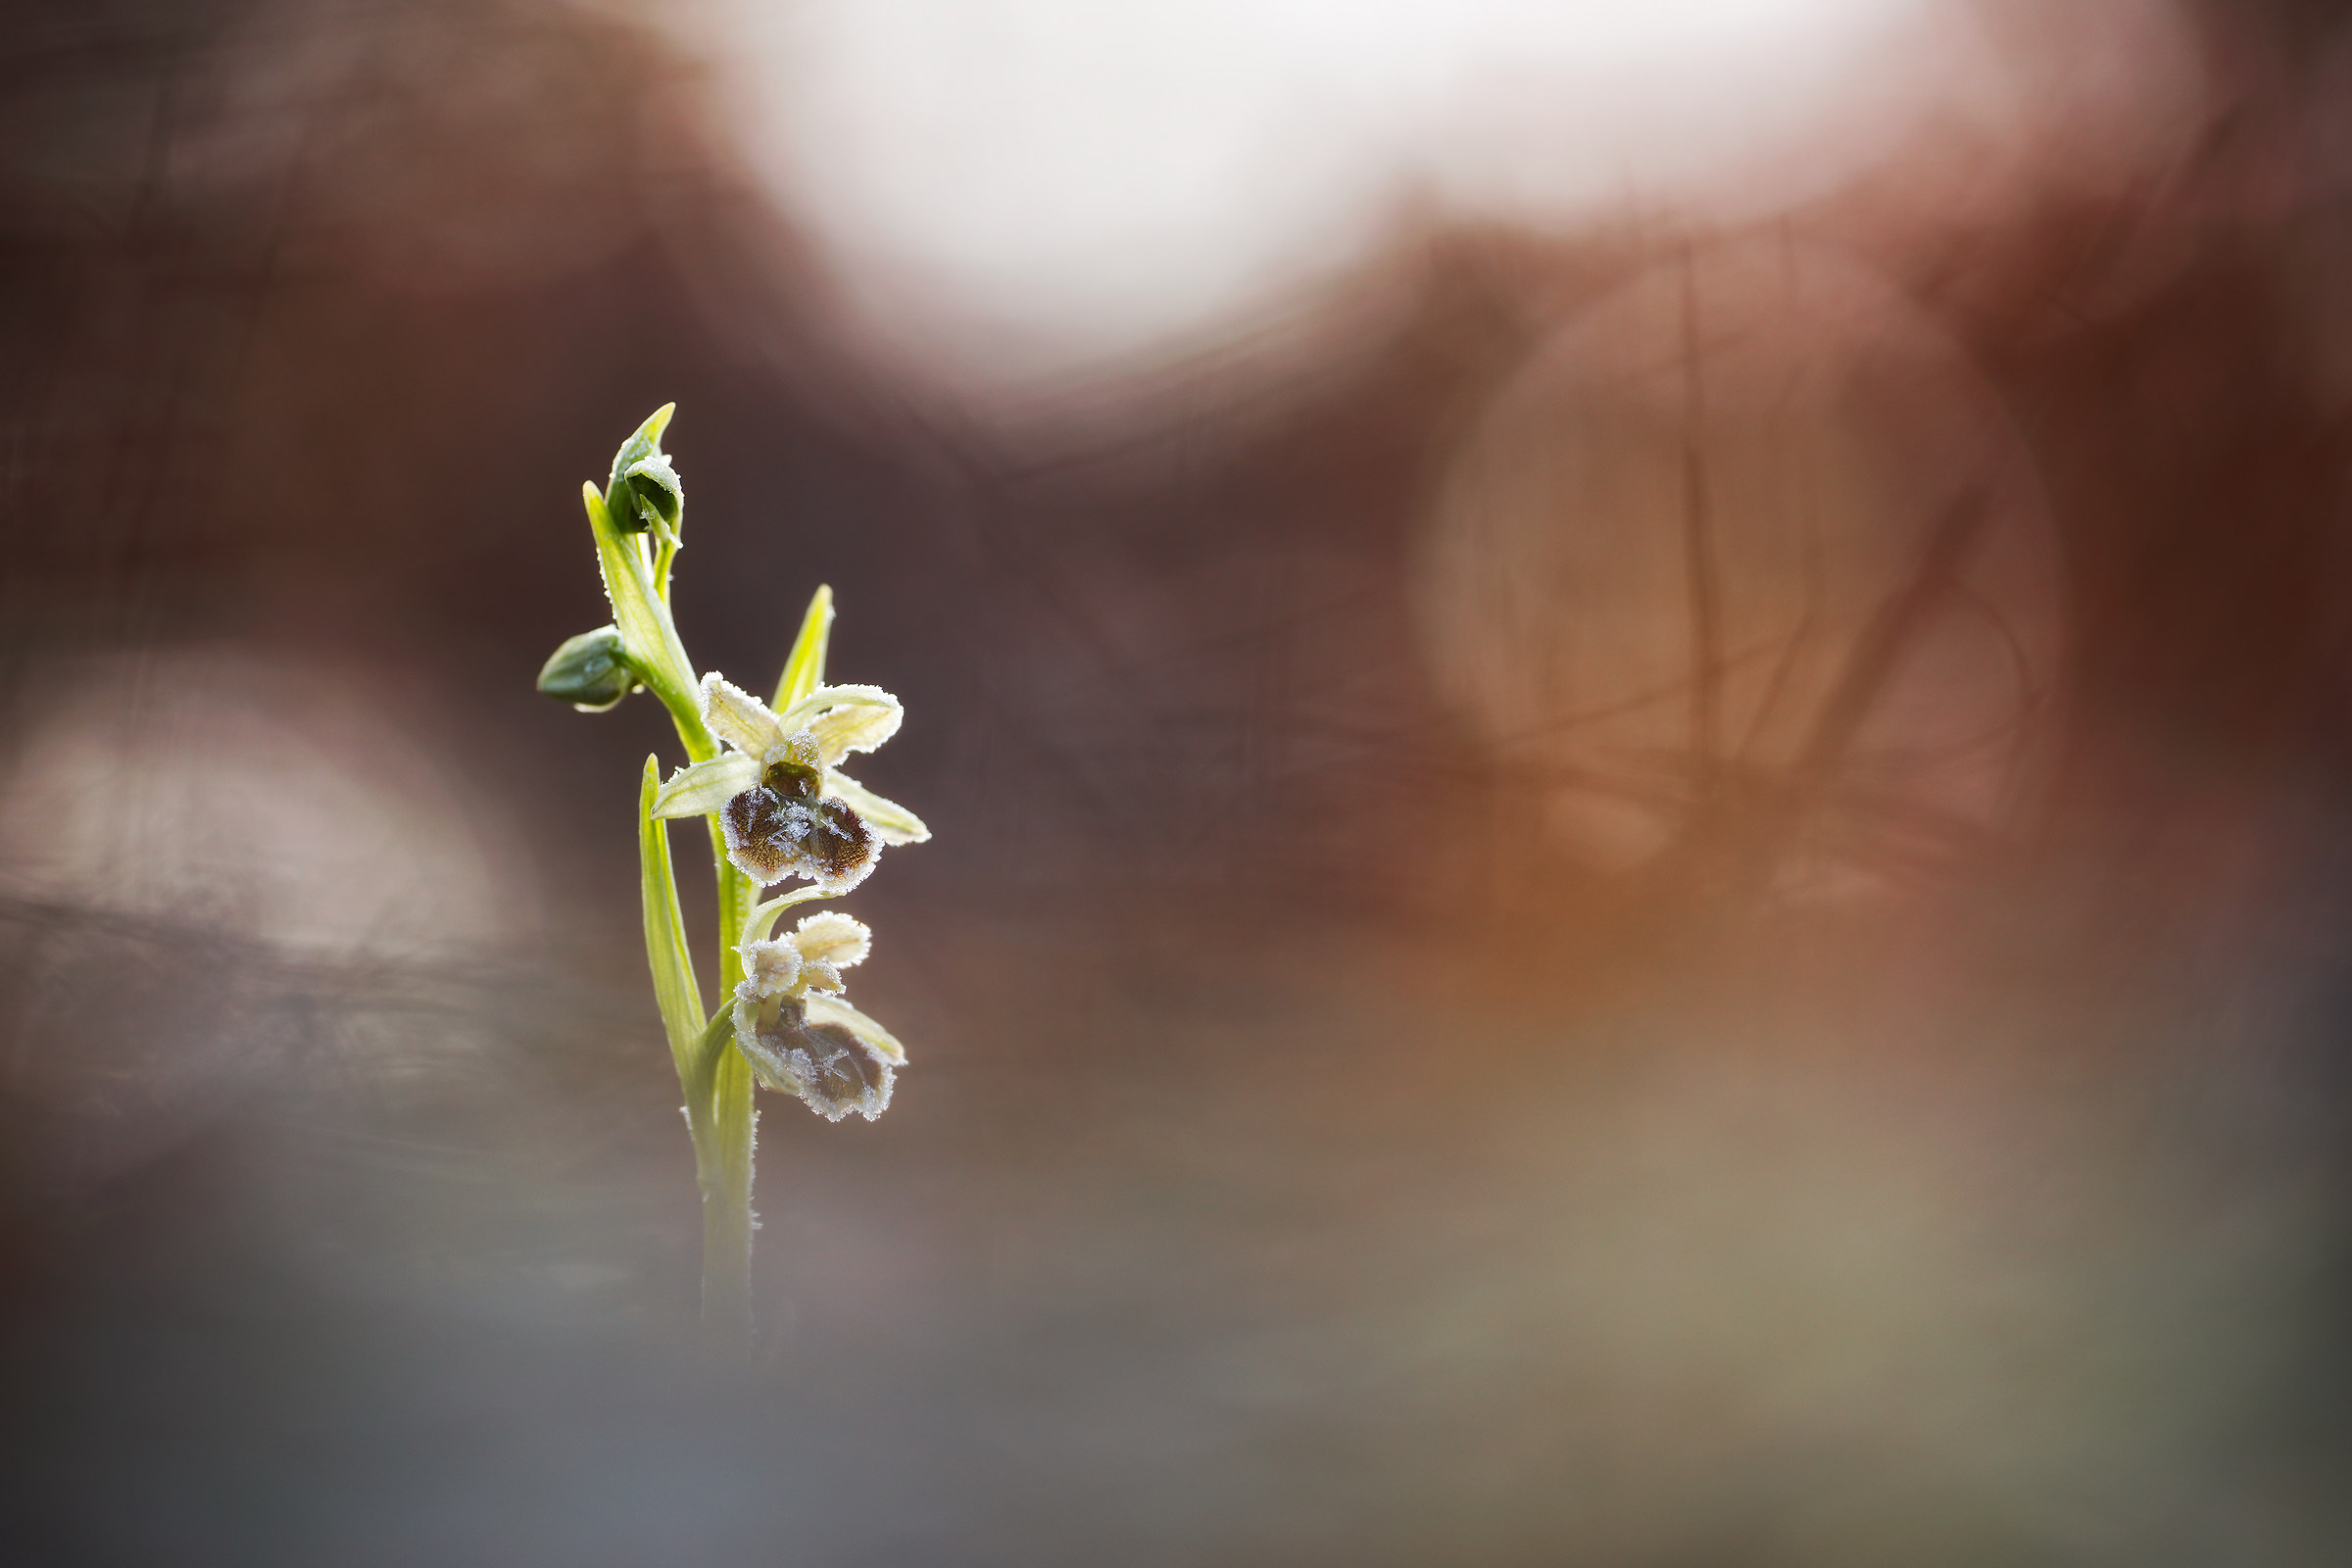 Ophrys sphegodes "brine subsp."...